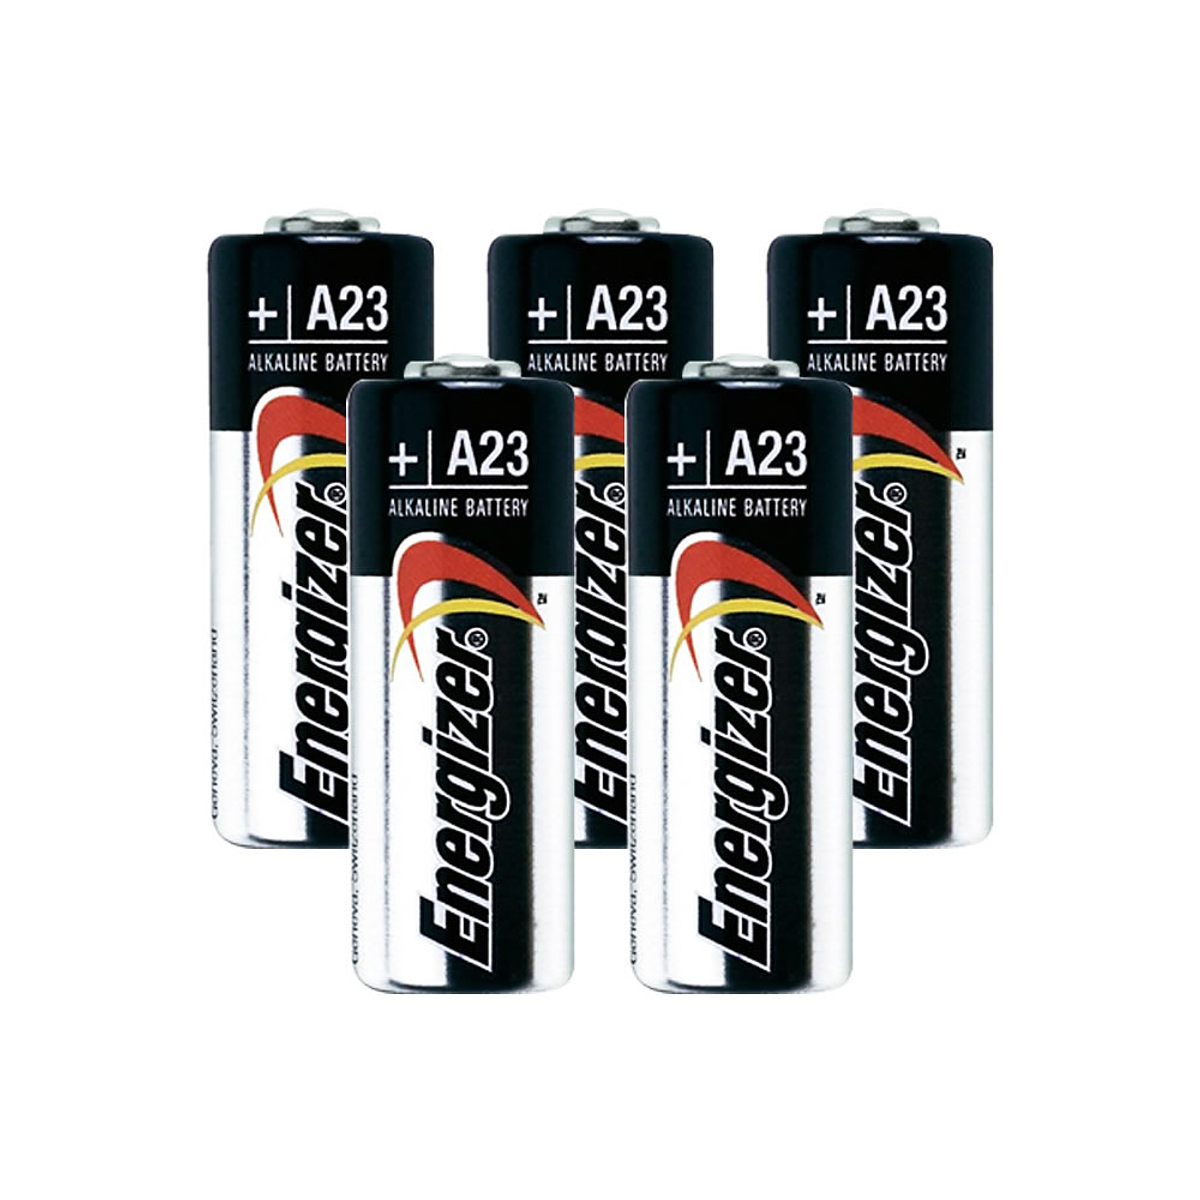 Pack 5 pilas A23 Energizer 23A 12v Alcalinas